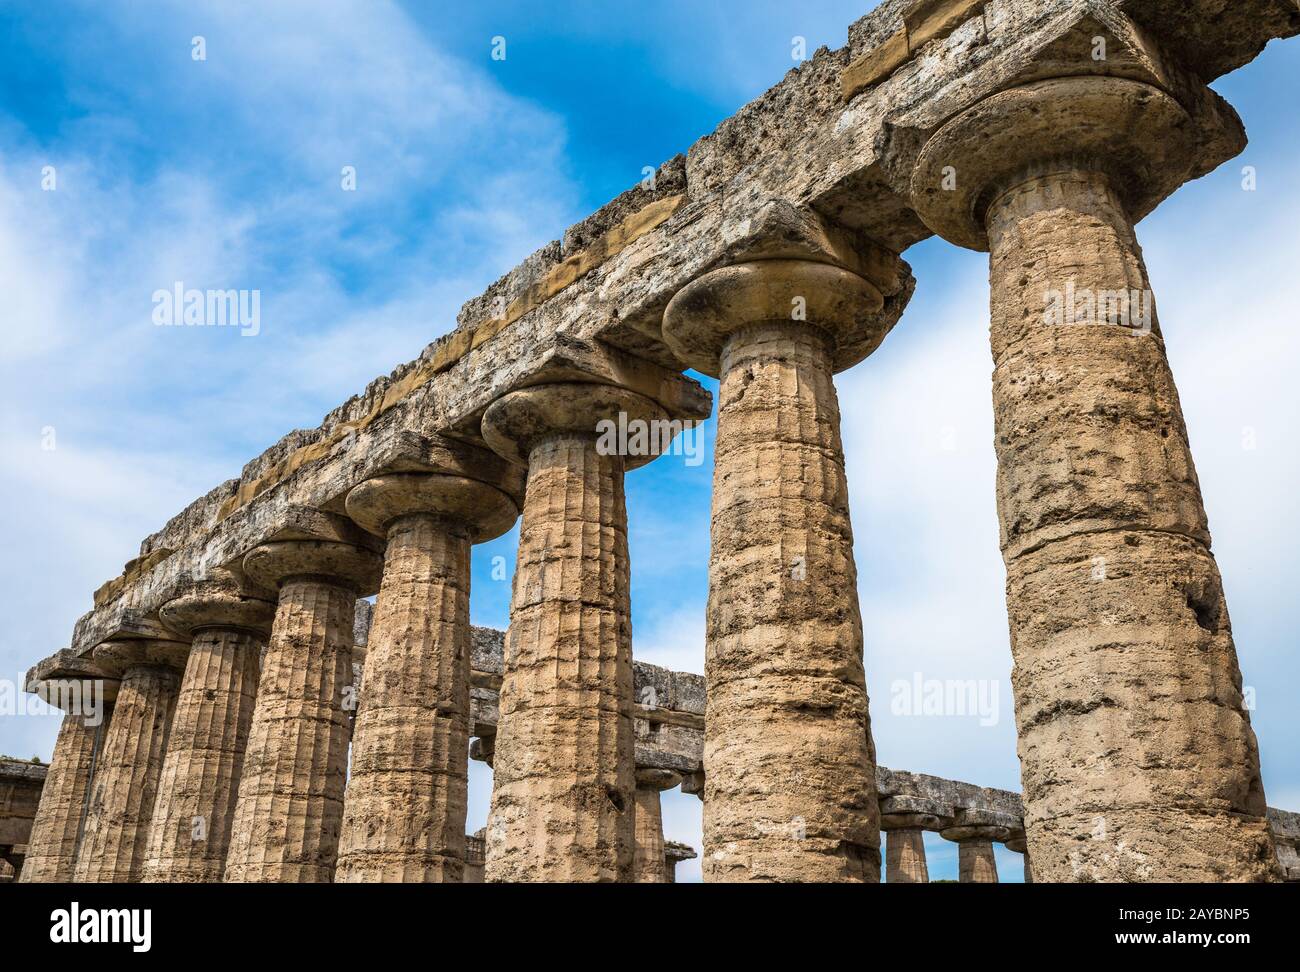 Le Temple de Cérès ou Athena au site archéologique de Paestum, Province de Salerne, Campanie, Italie Banque D'Images